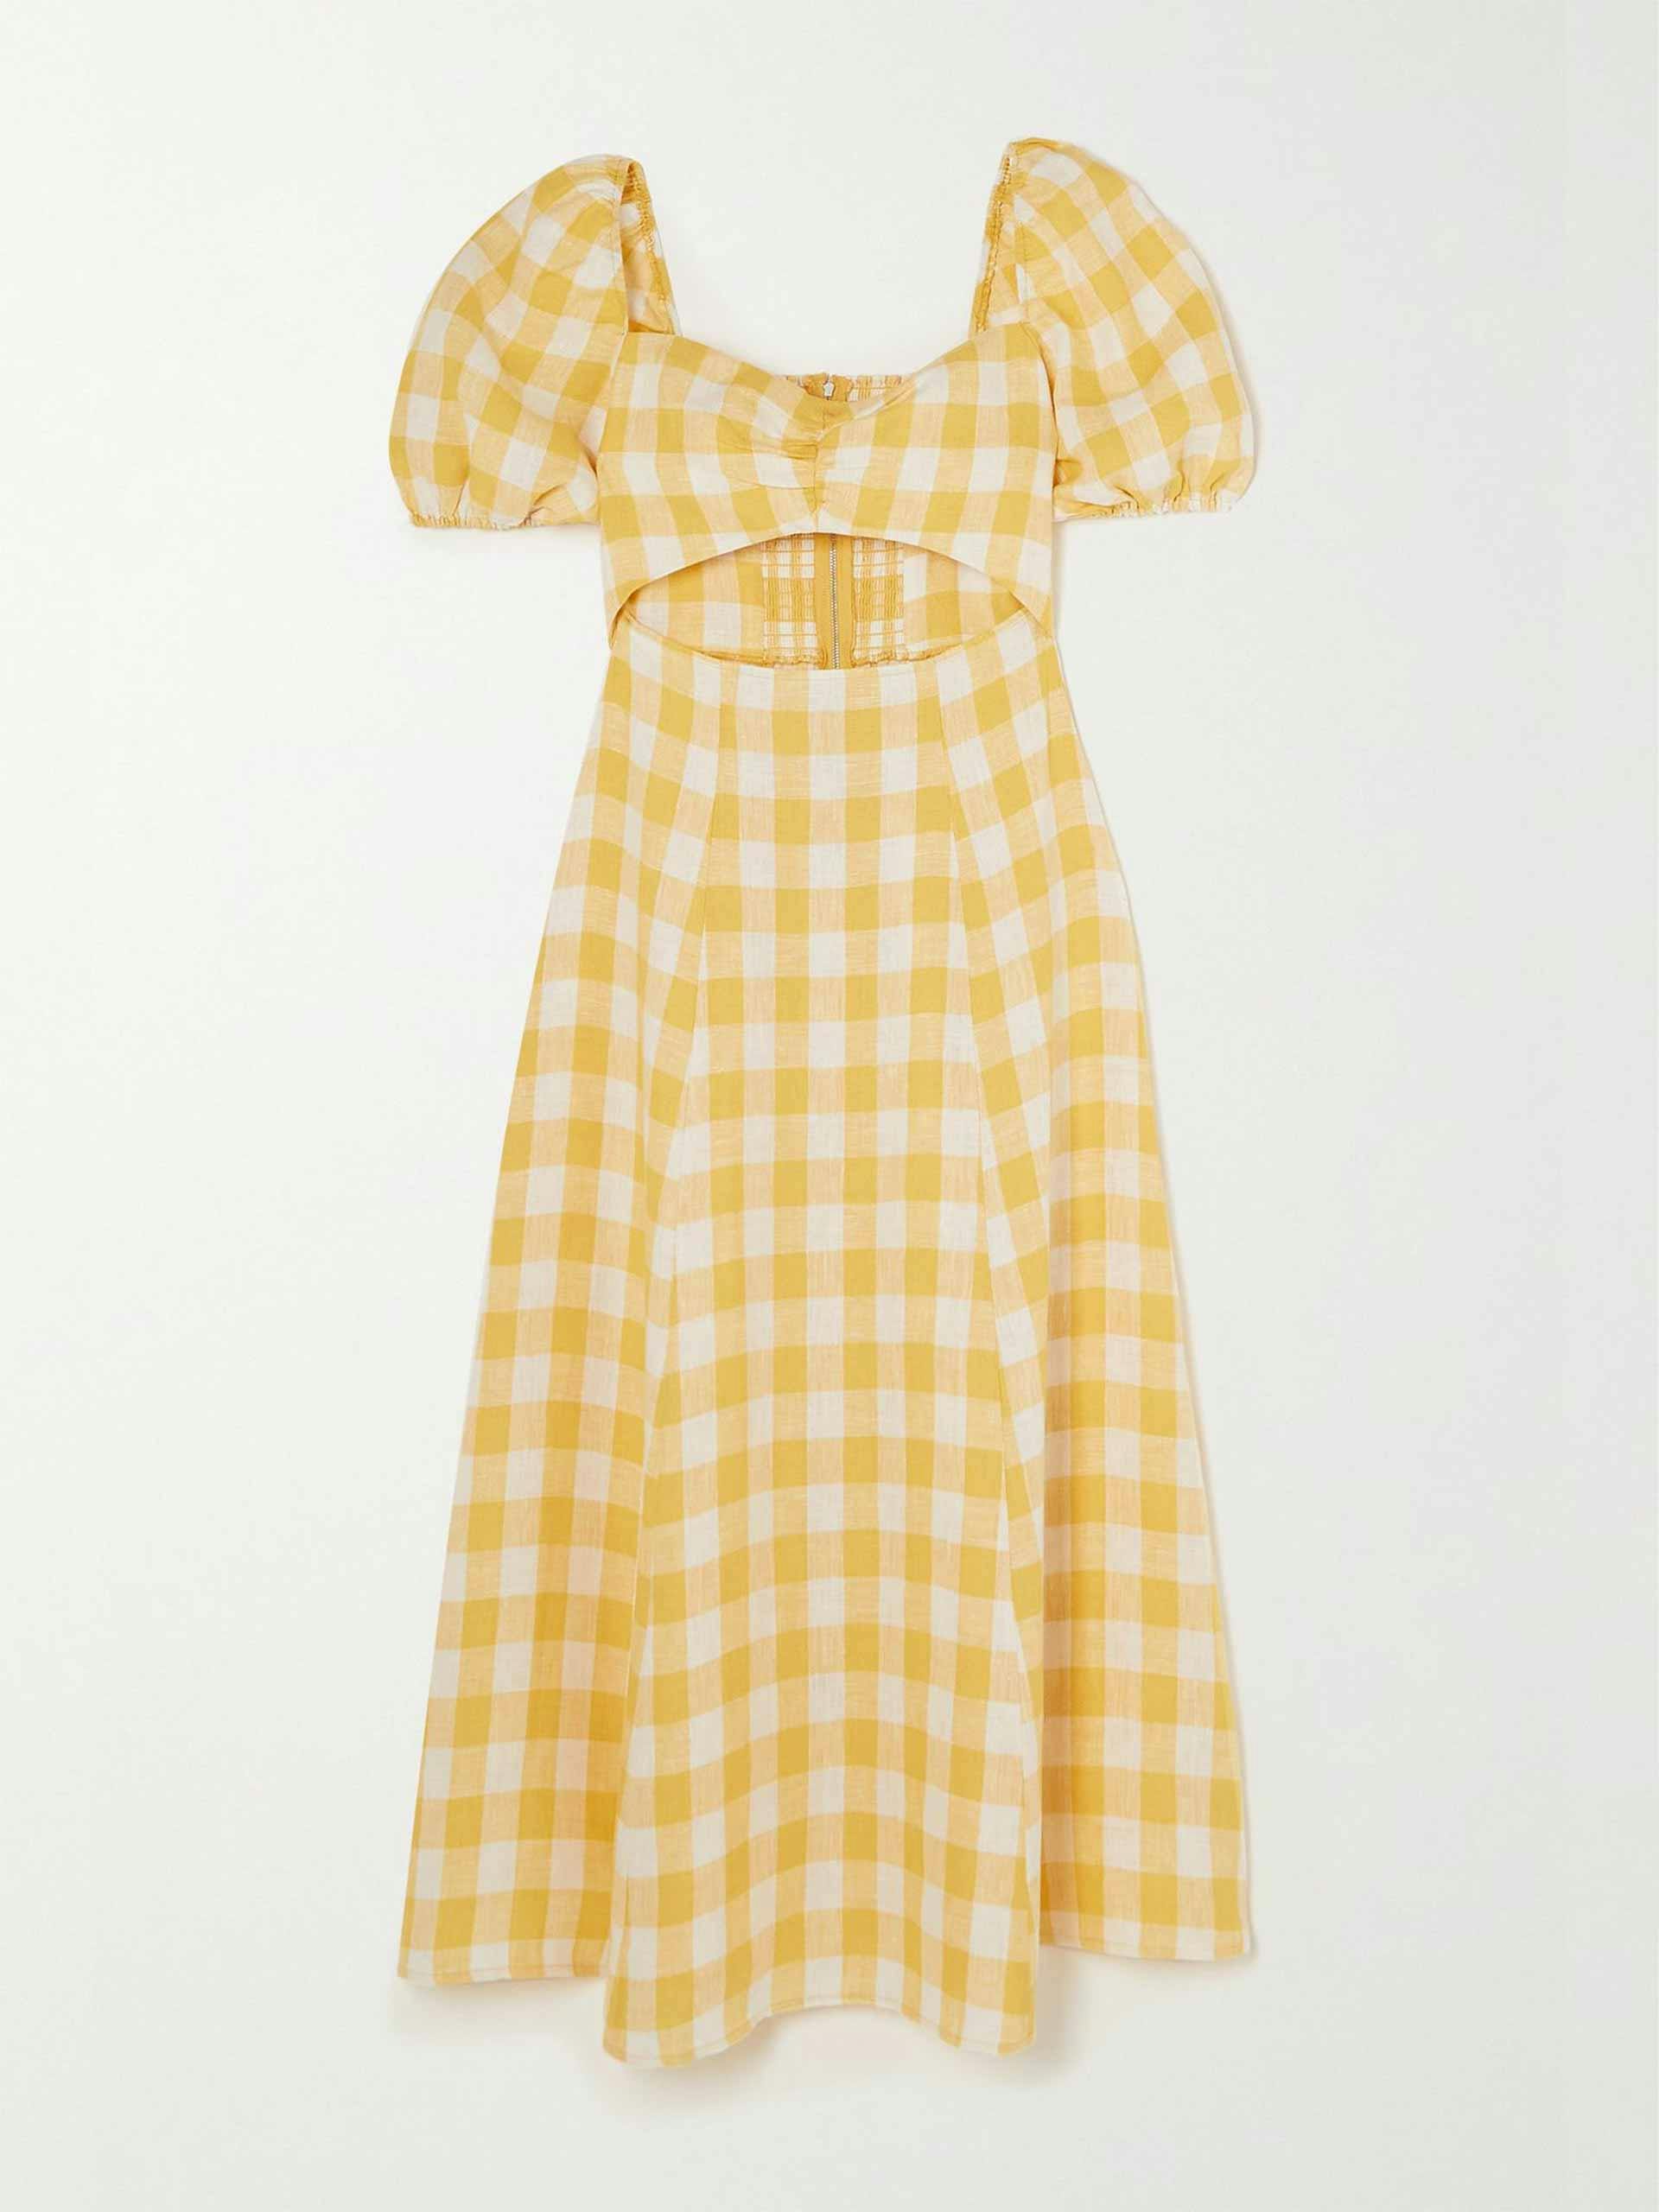 Cutout gingham linen dress